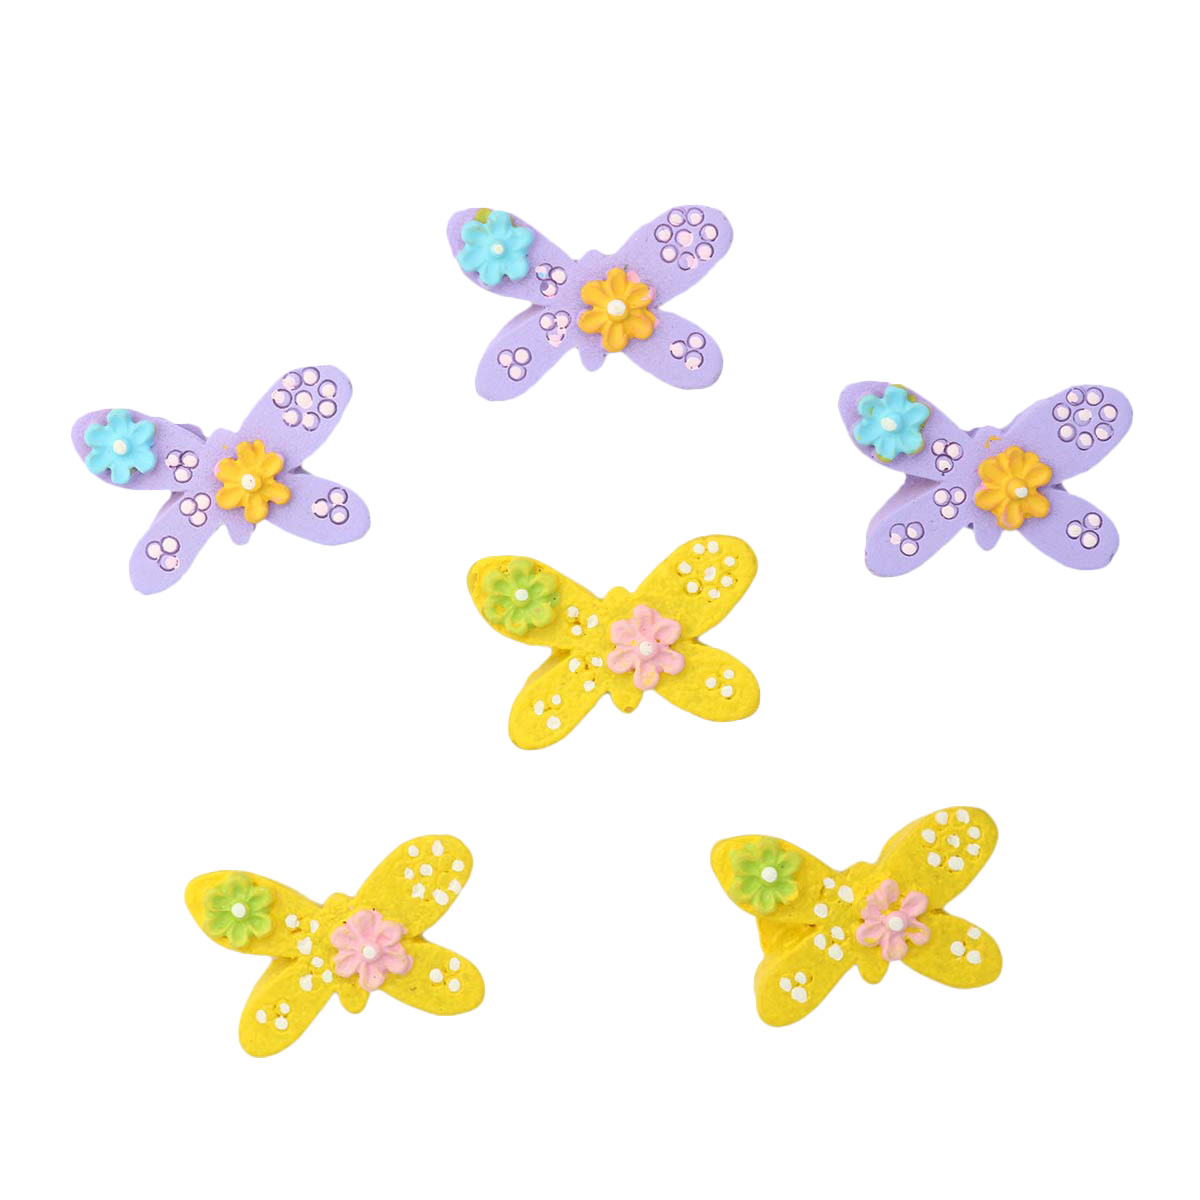 LR15-4597 Объемные фигурки 'Бабочка' (полимер), фиолетово-желтая, 2*1,5 см, упак./6 шт., '